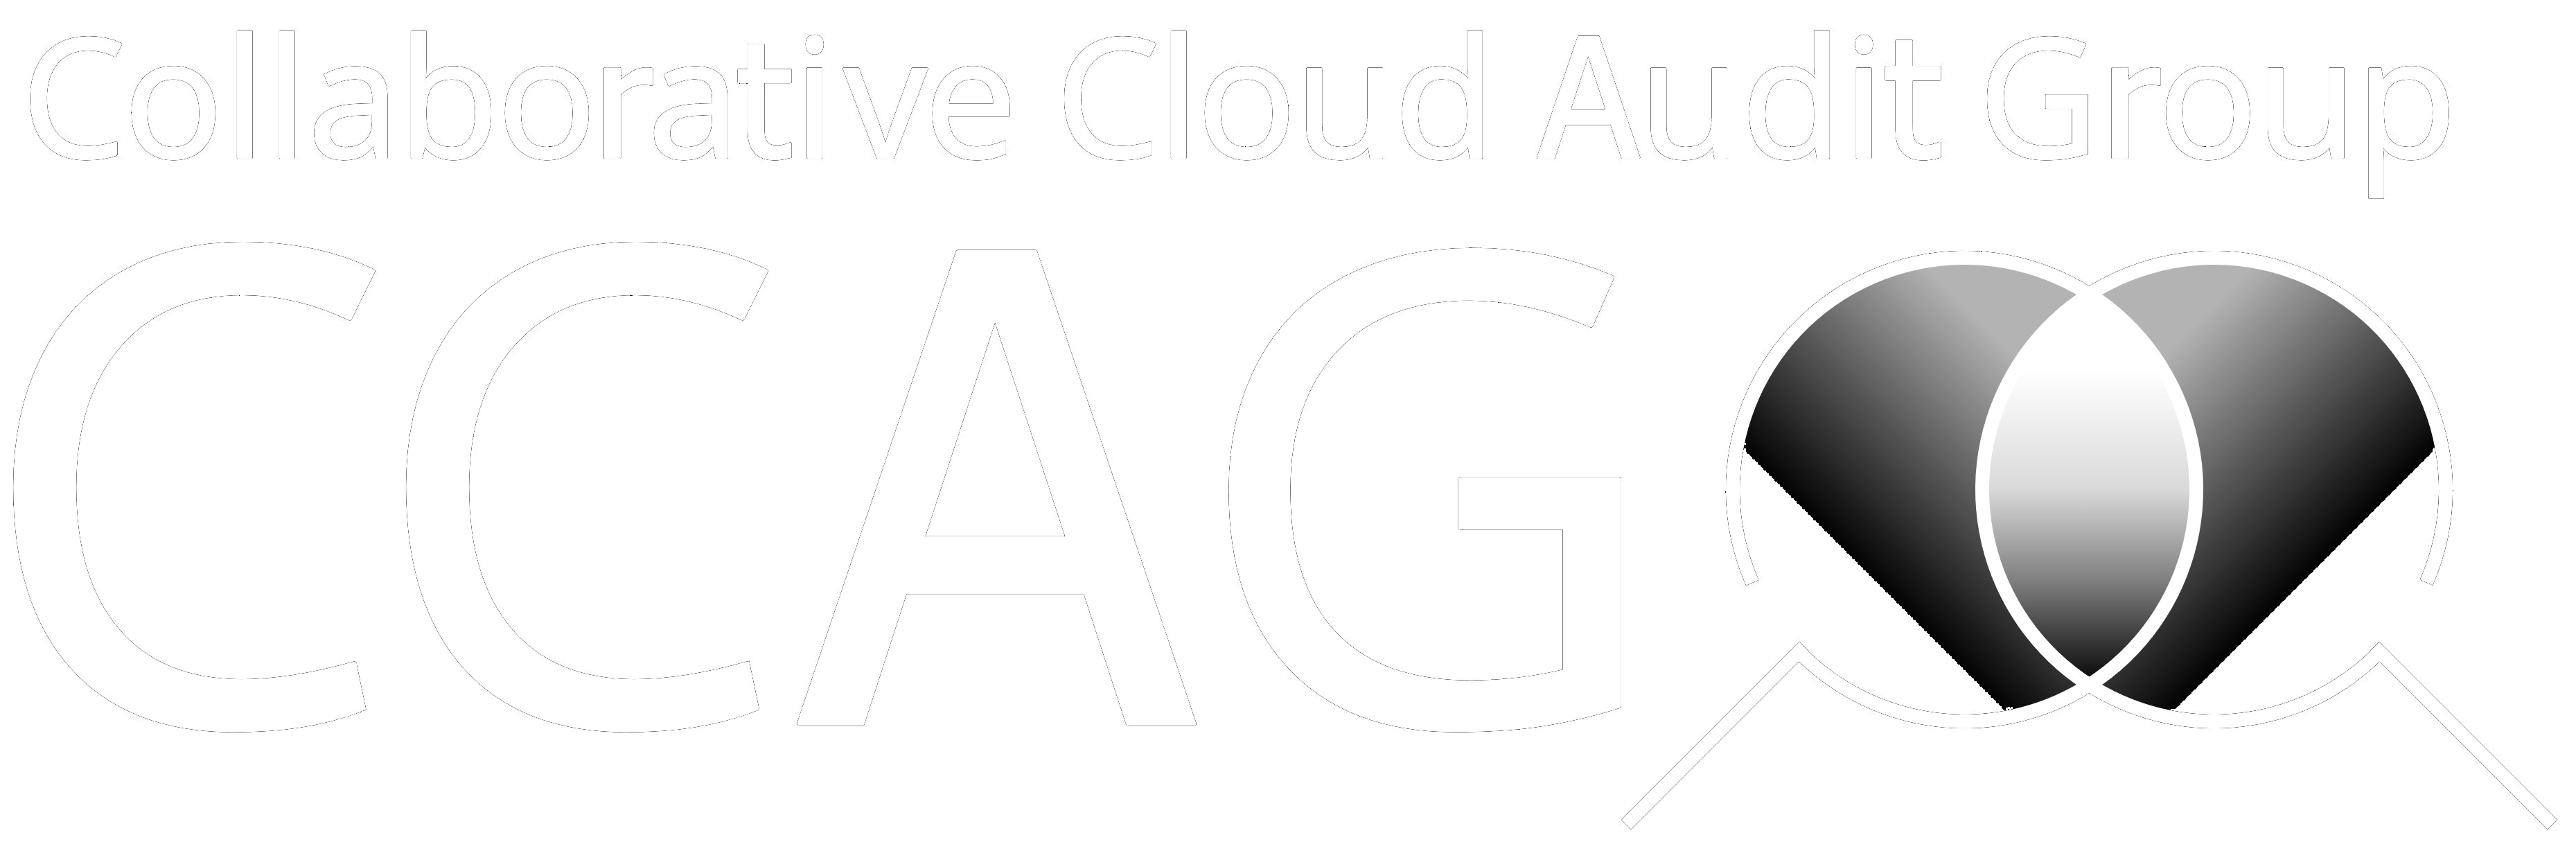 Collaborative Cloud Audit Group